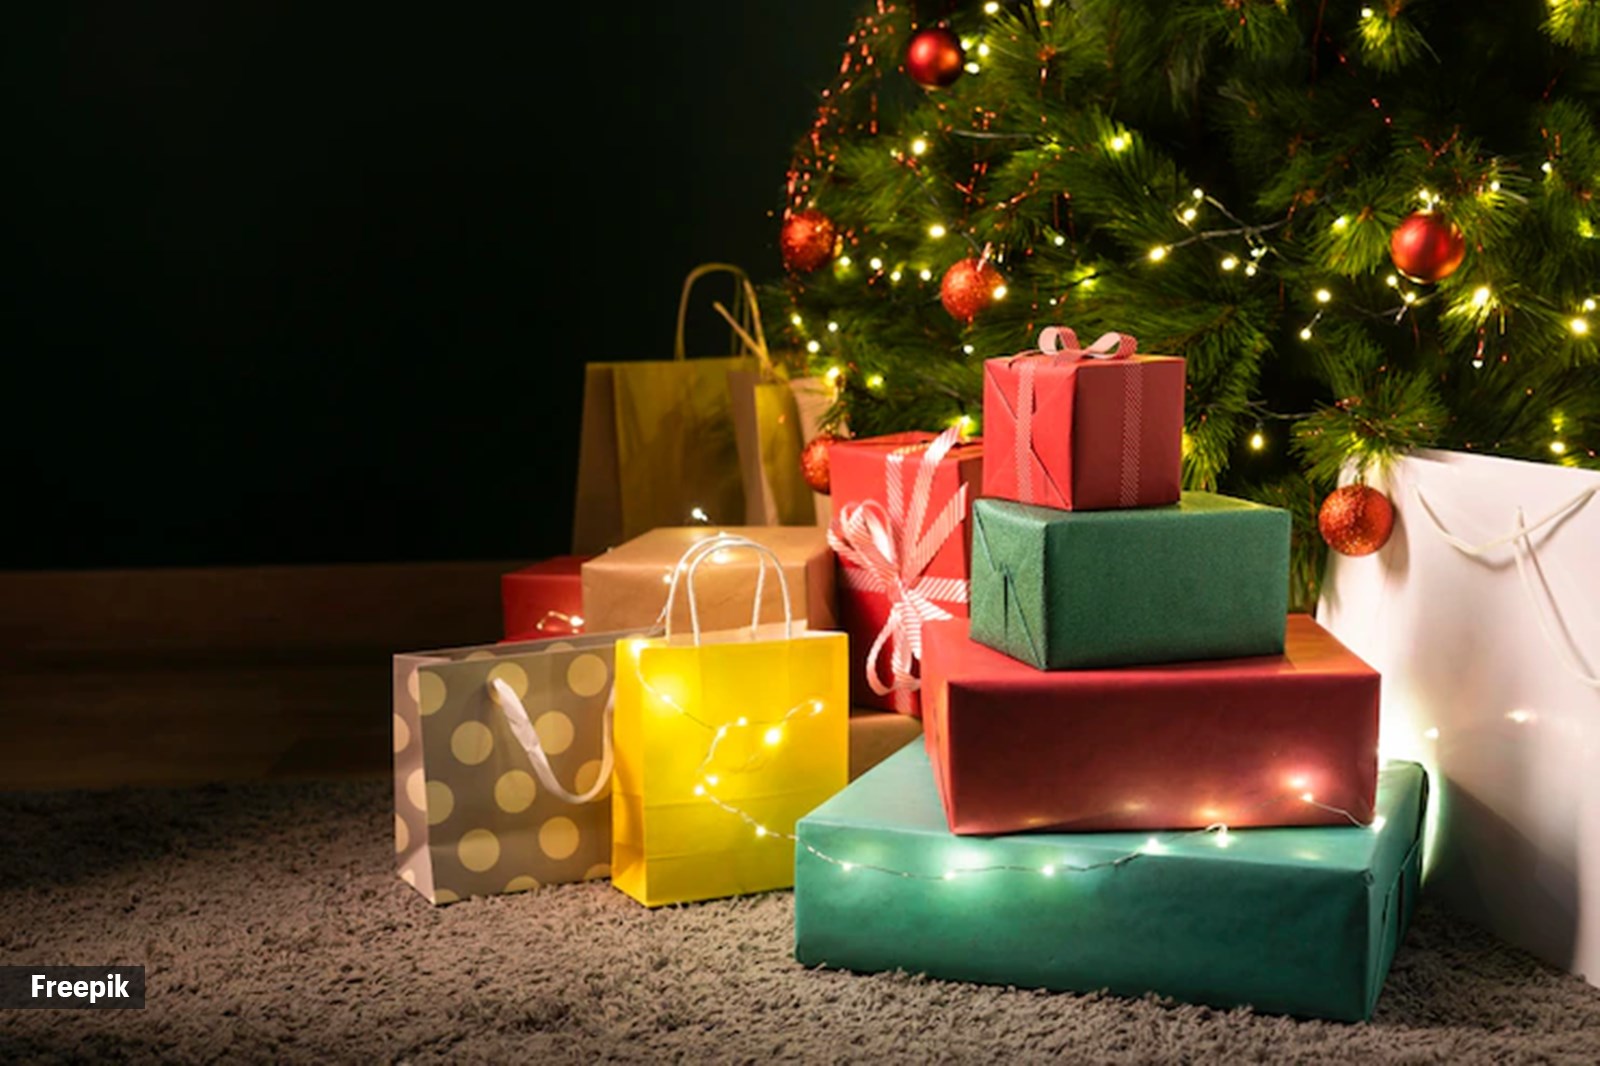 How many gifts does Santa bring & what should Santa bring?